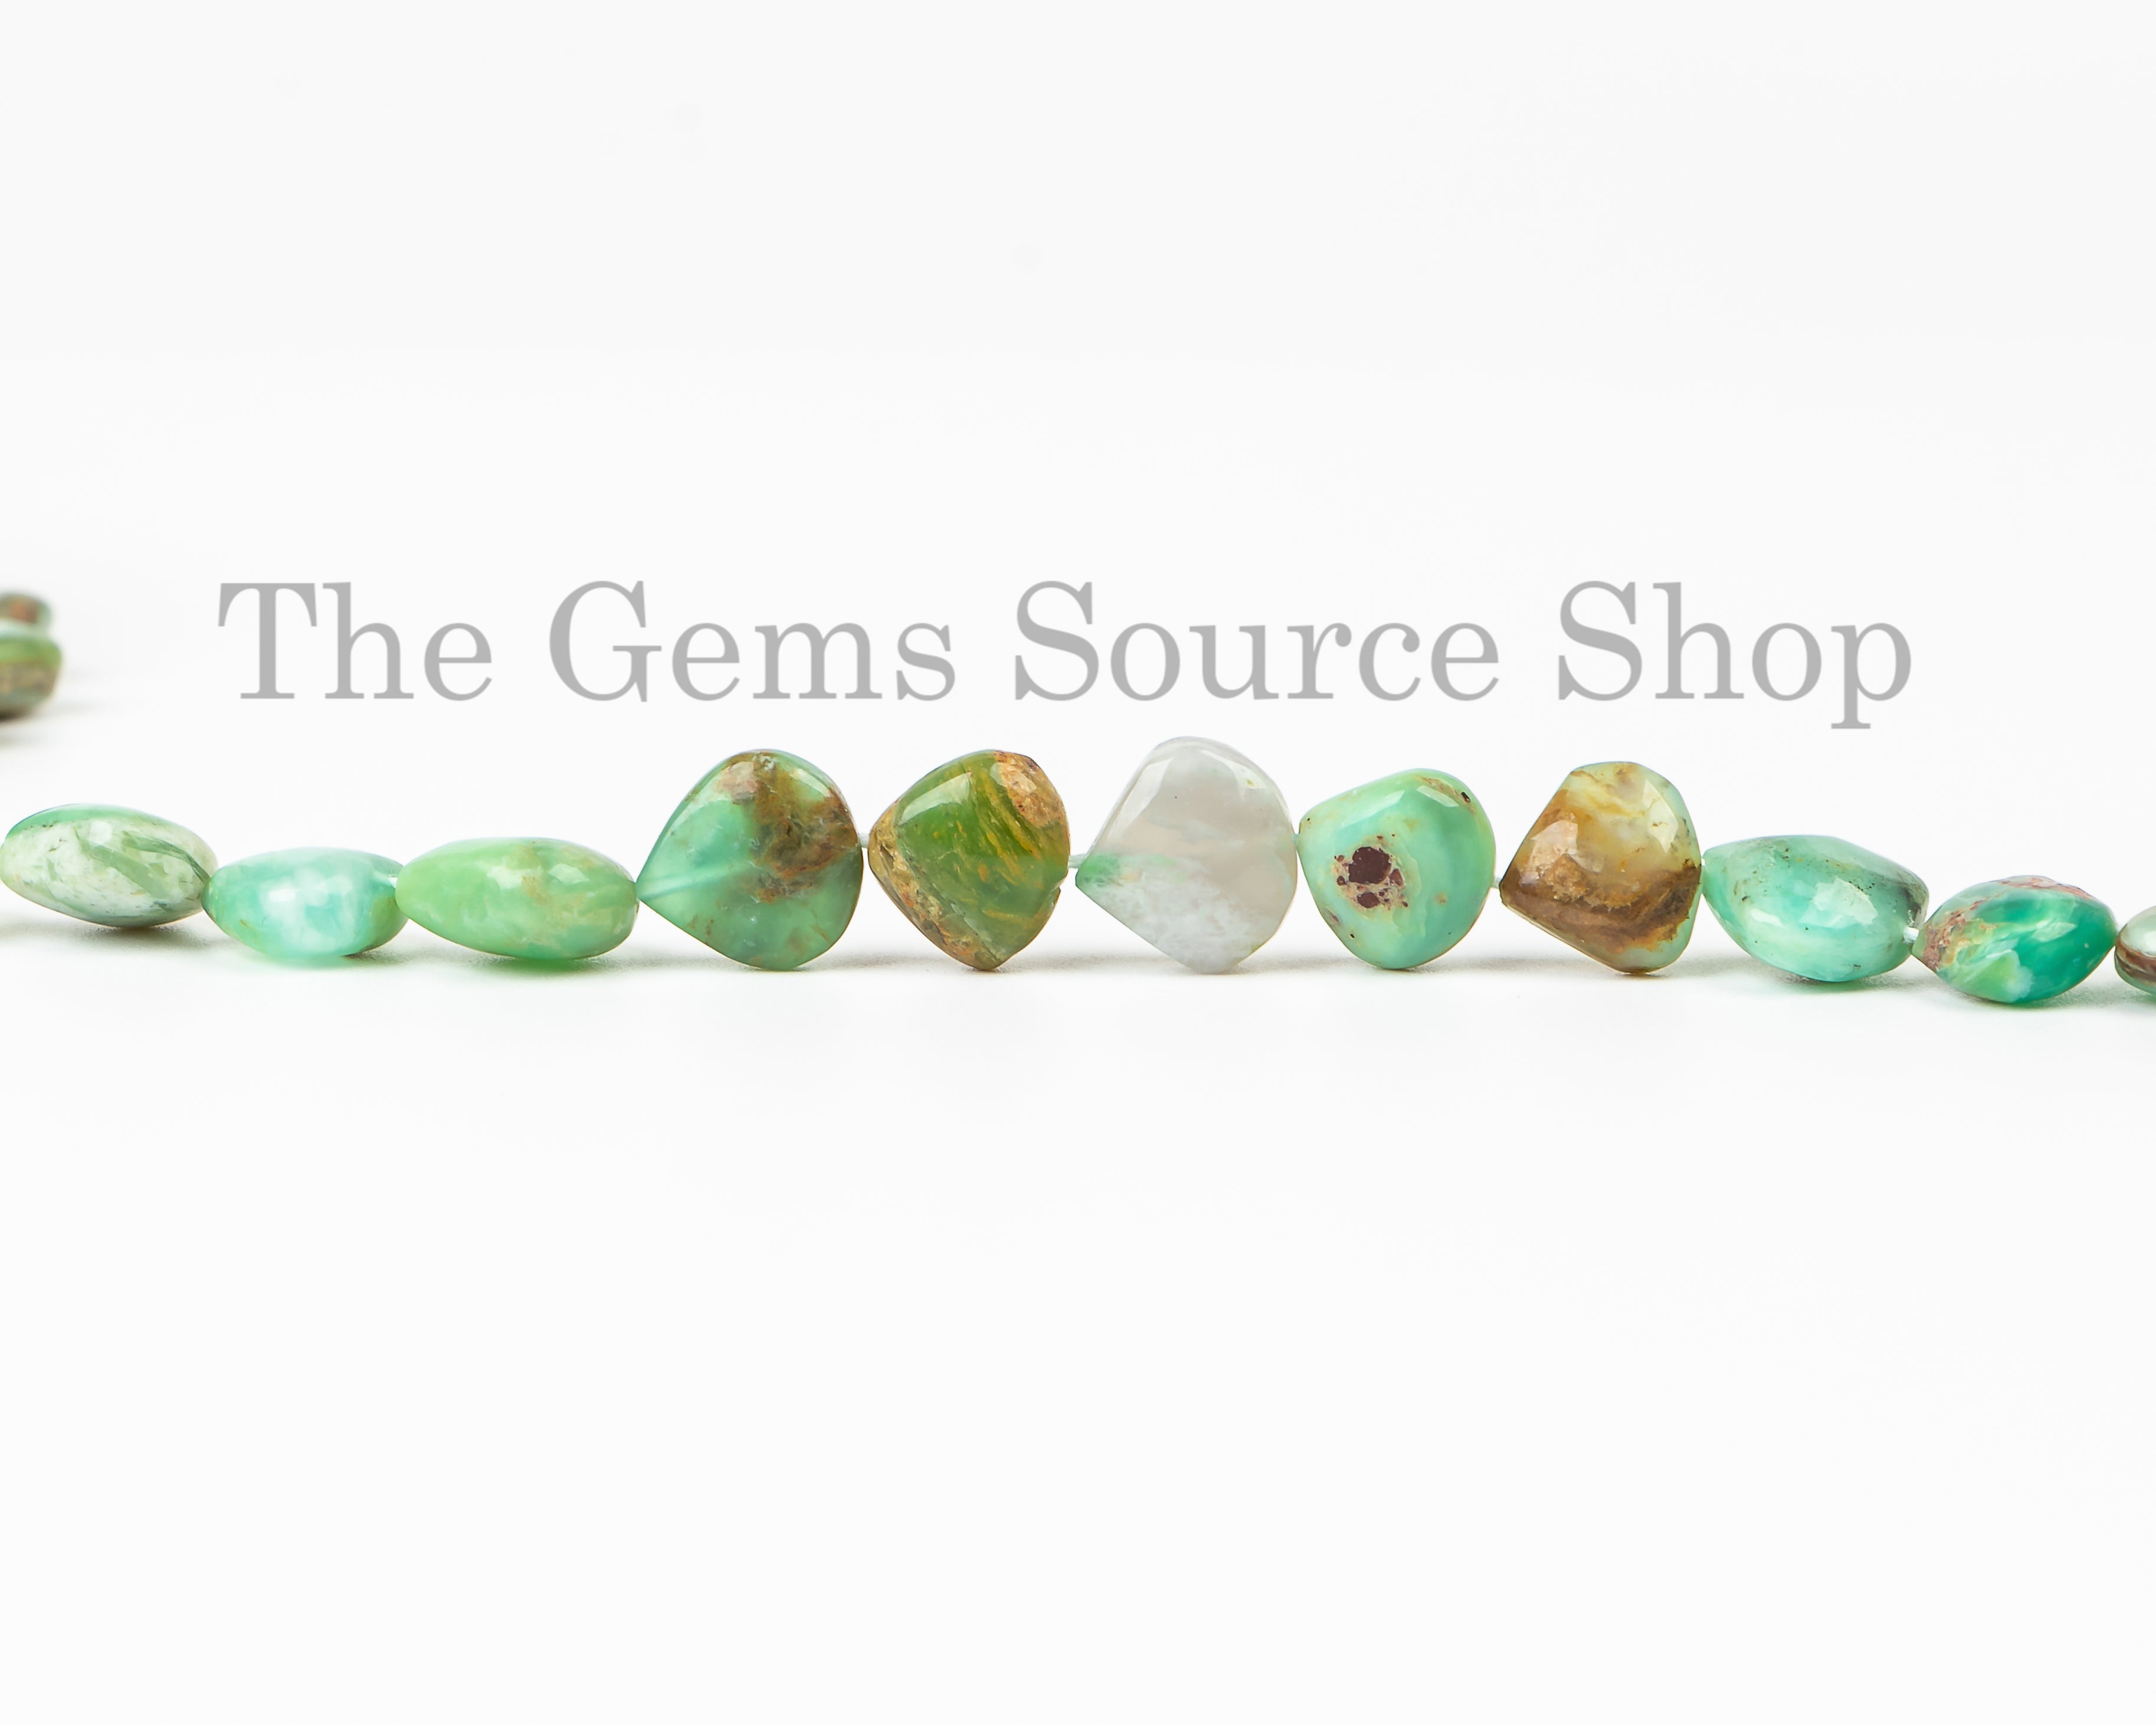 Peru Opal Smooth Heart Shape Beads, Plain Peru Opal Beads, Wholesale Beads